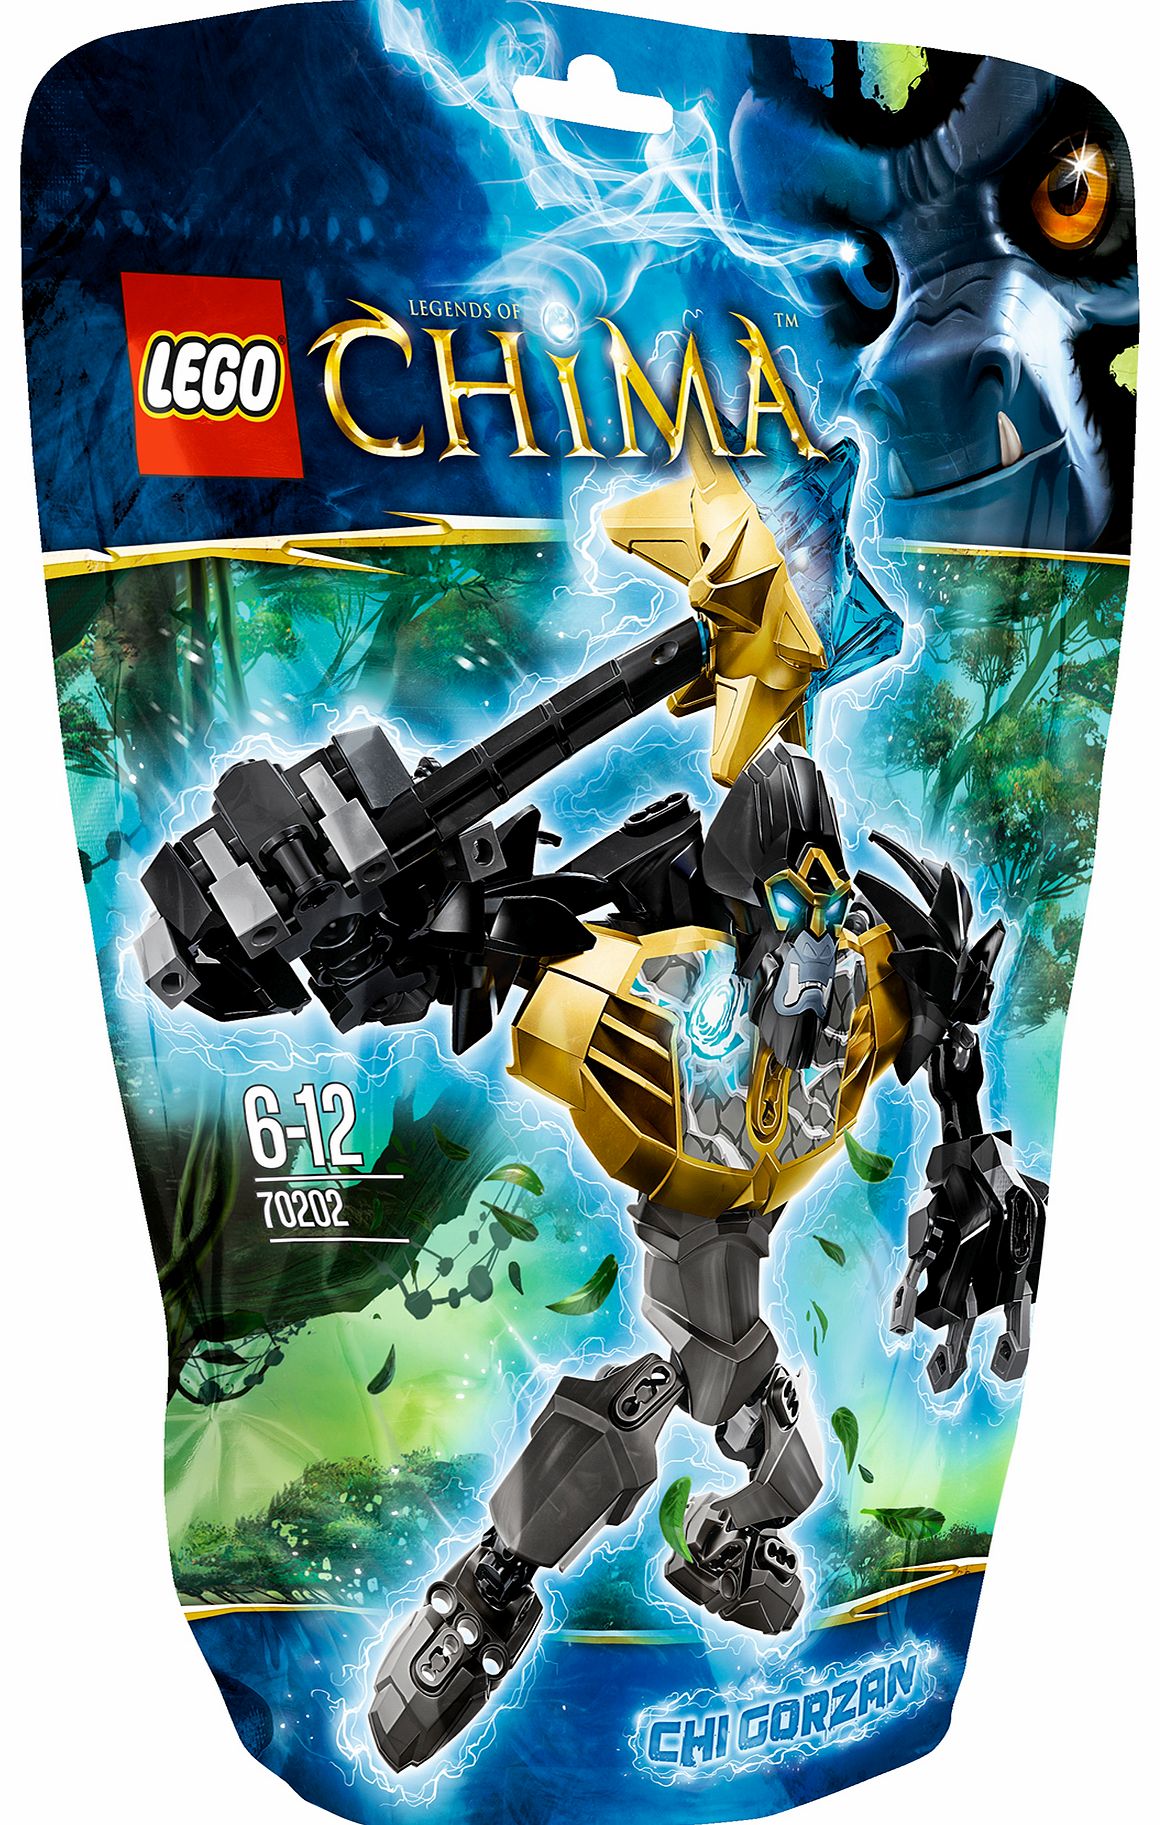 Lego Chima CHI Gorzan 70202